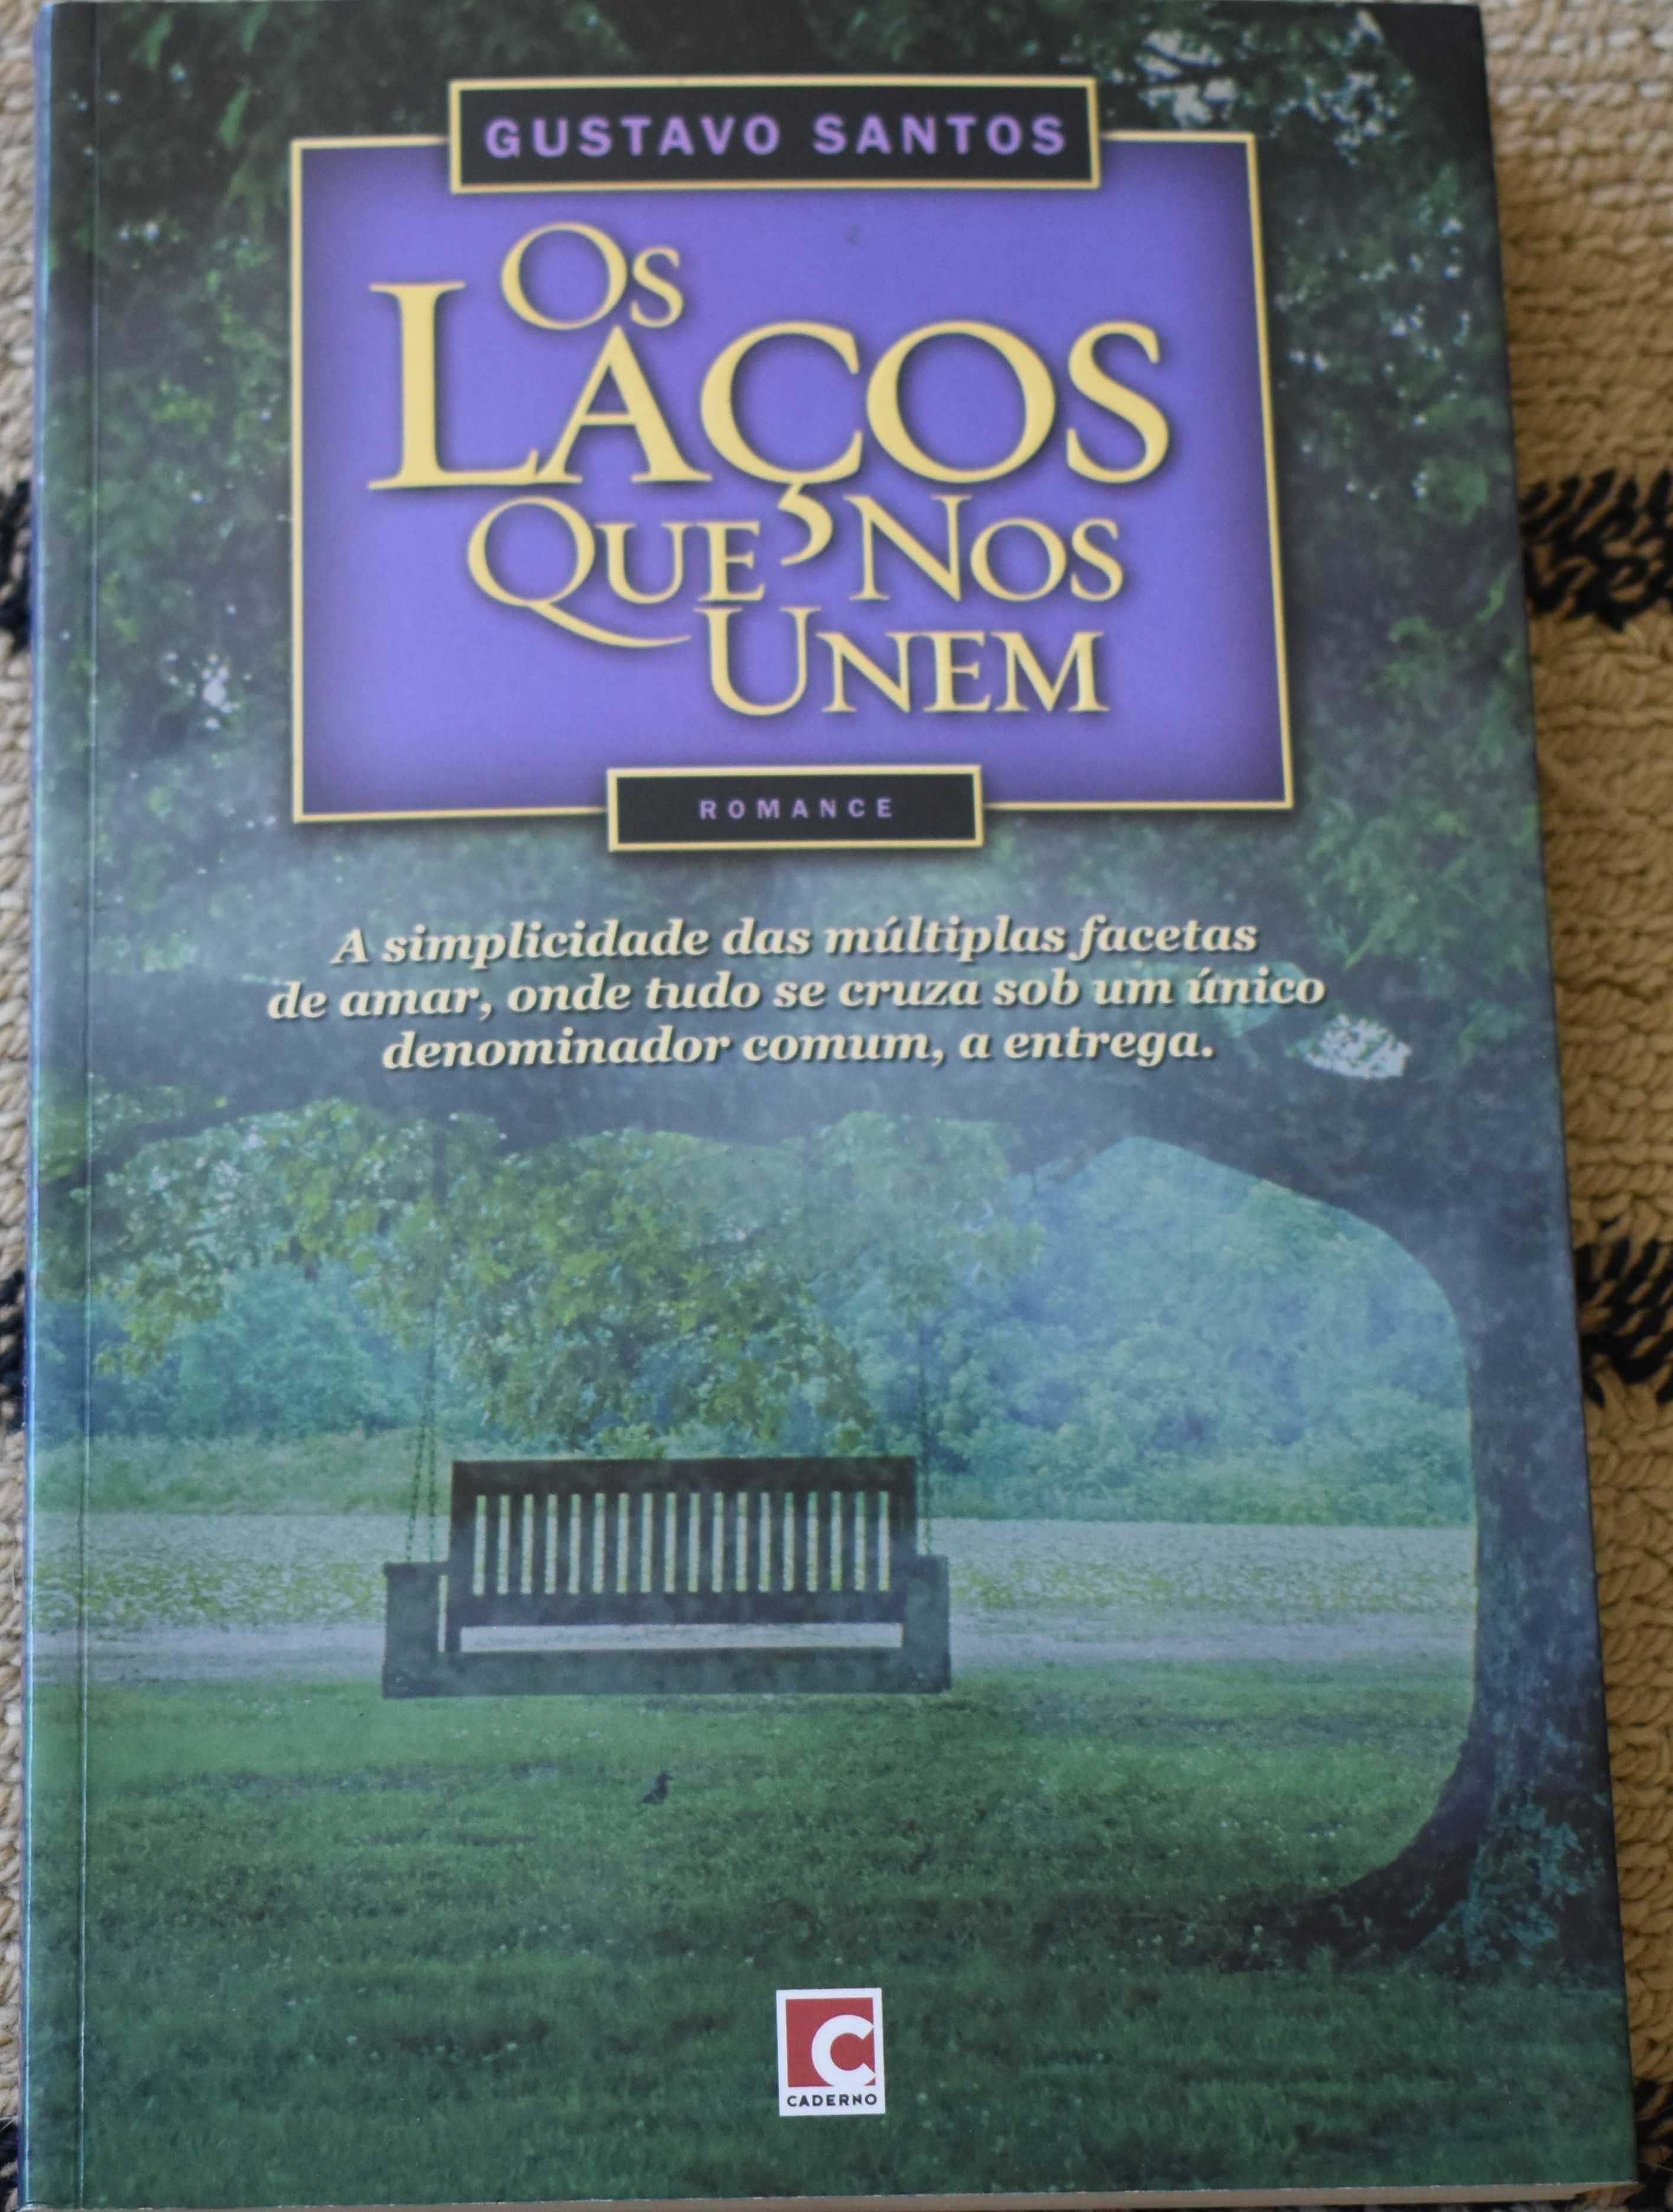 Livro "Os Laços que nos unem" de Gustavo Santos em muito bom estado